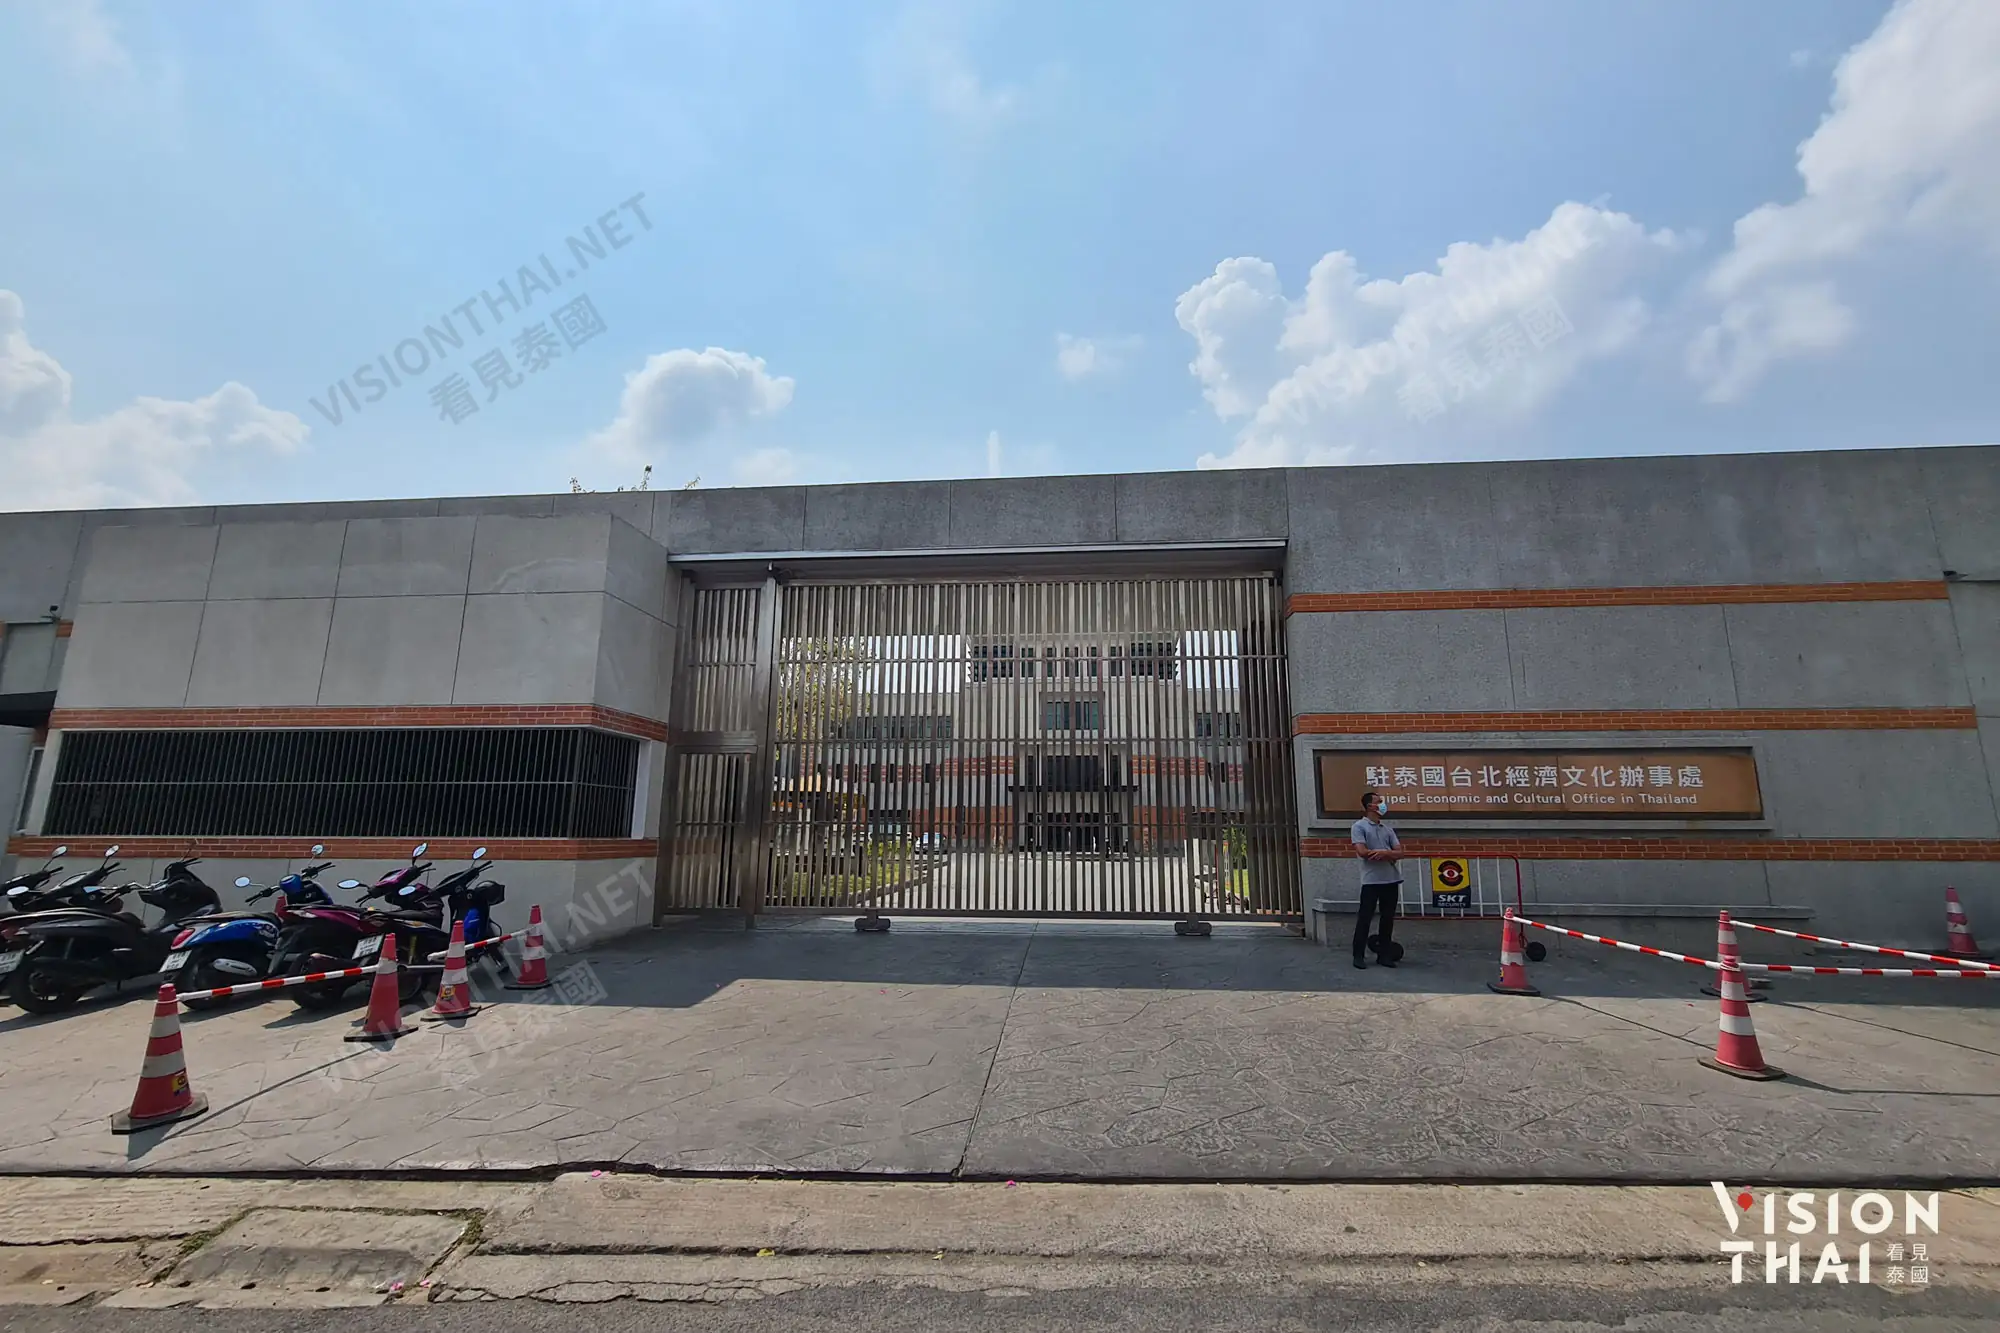 駐泰國台北經濟文化辦事處大門，請從左方警衛室入口進入（圖片來源：VISION THAI看見泰國）